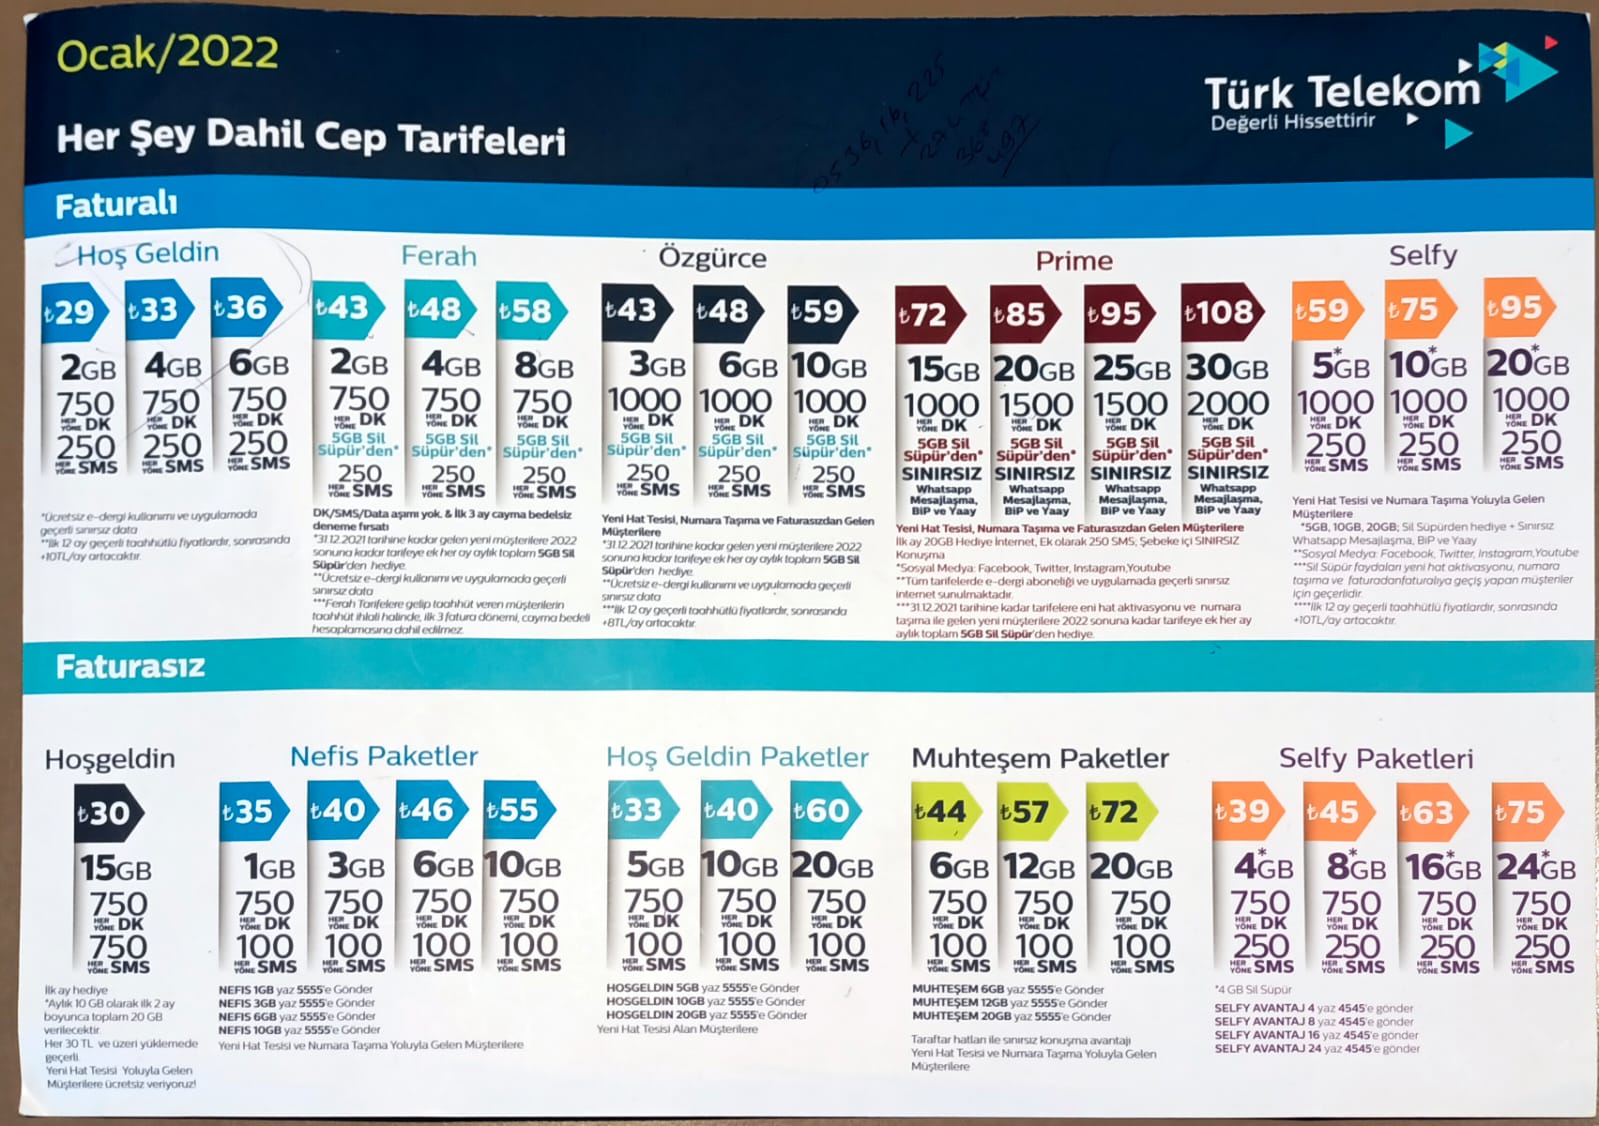 turkcell aşmaz paketler faturasiz dan faturali hatta geÇİŞ paketlerİ